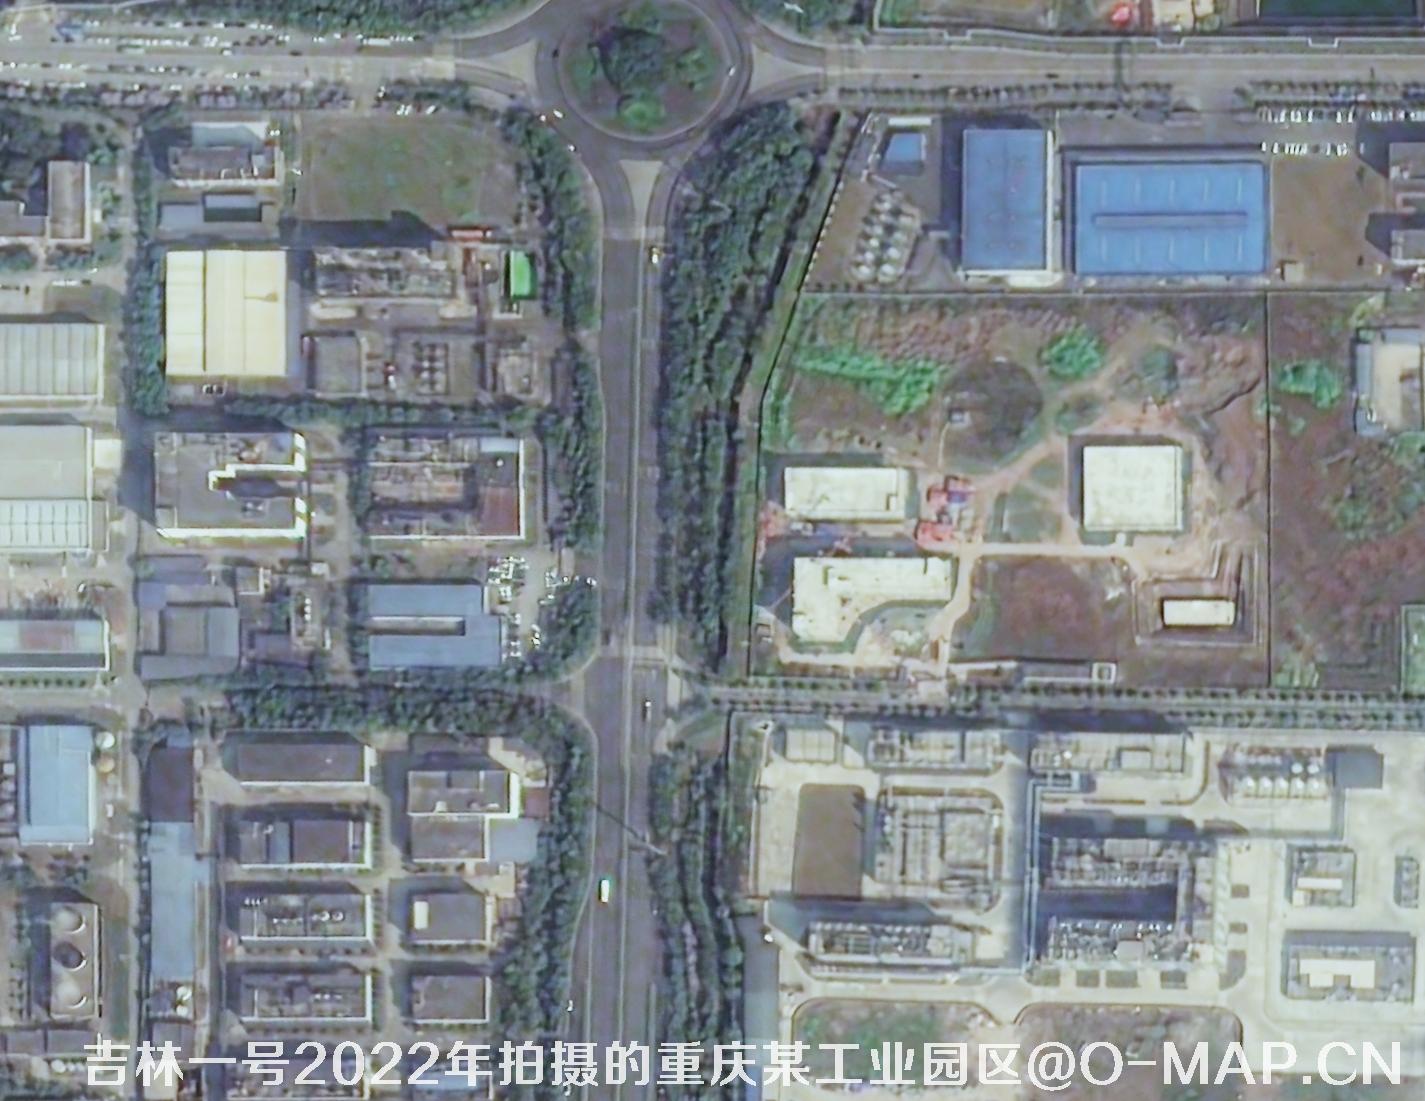 吉林一号拍摄的卫星图可用于土地征迁证据